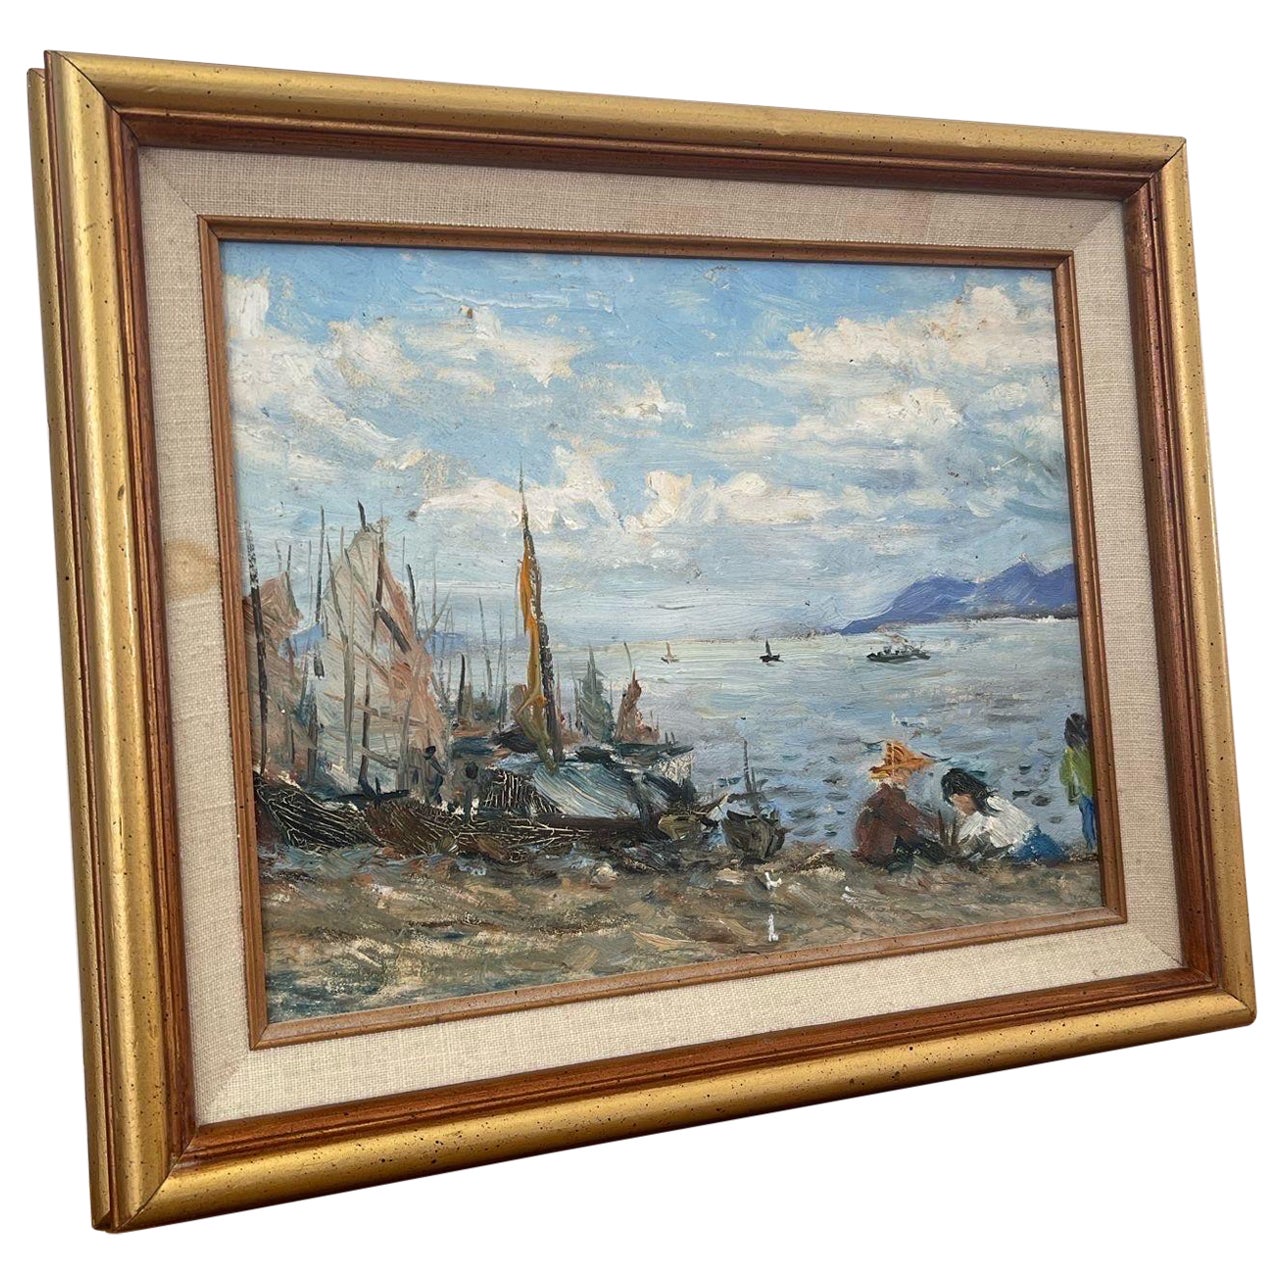 Peinture vintage encadrée d'une scène de plage.